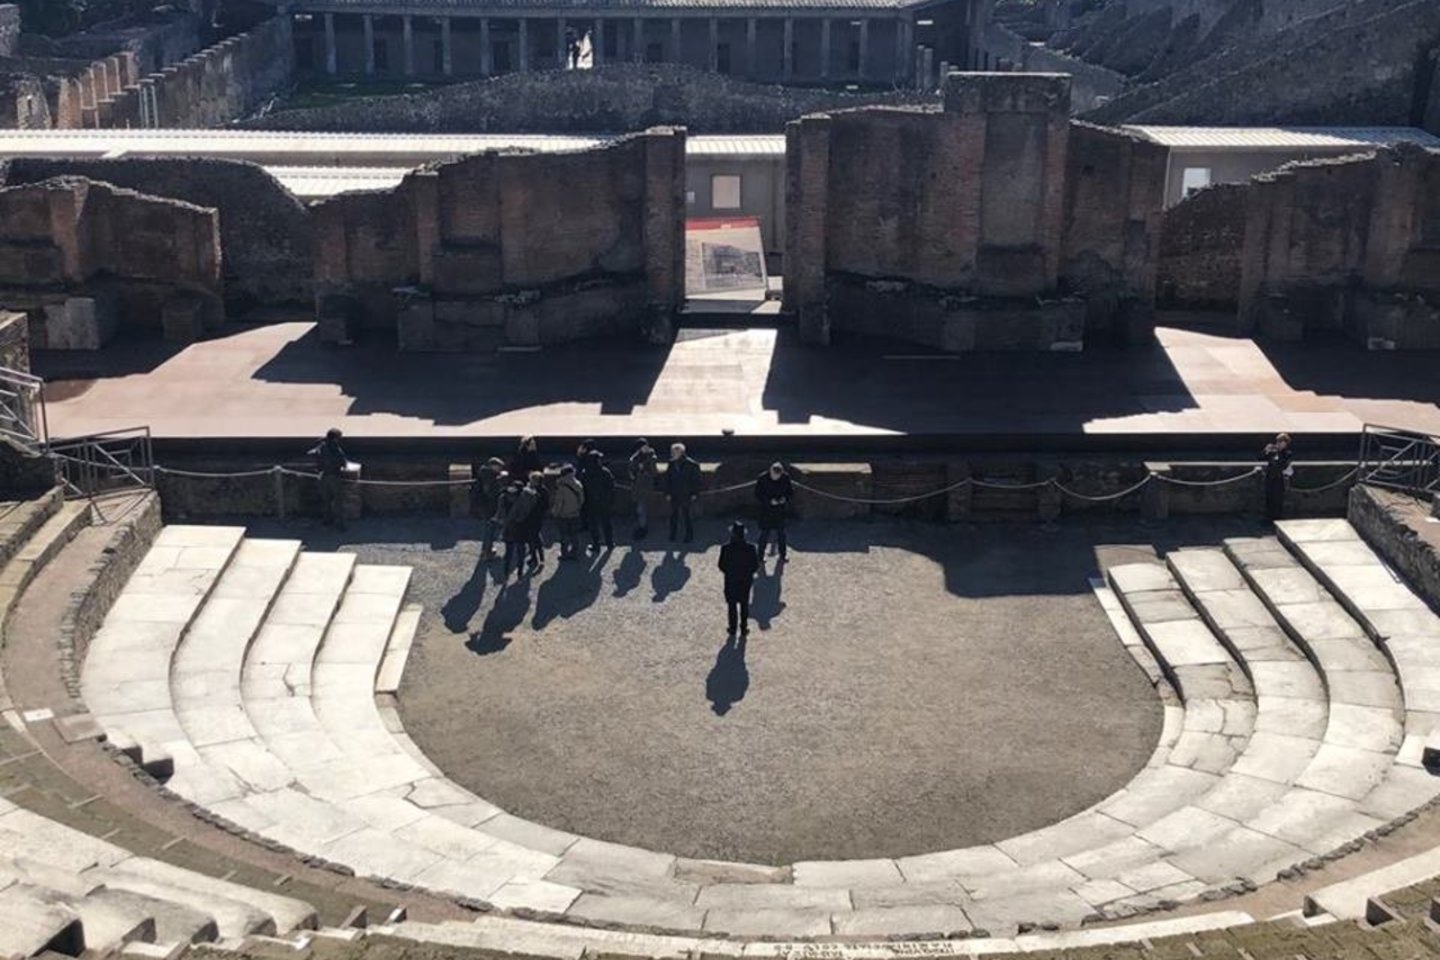 Spektaklis „Edipas Kolone“ bus rodomas antikiniame amfiteatre.<br>Nuotr. iš G.Tuminaitės asmeninio archyvo